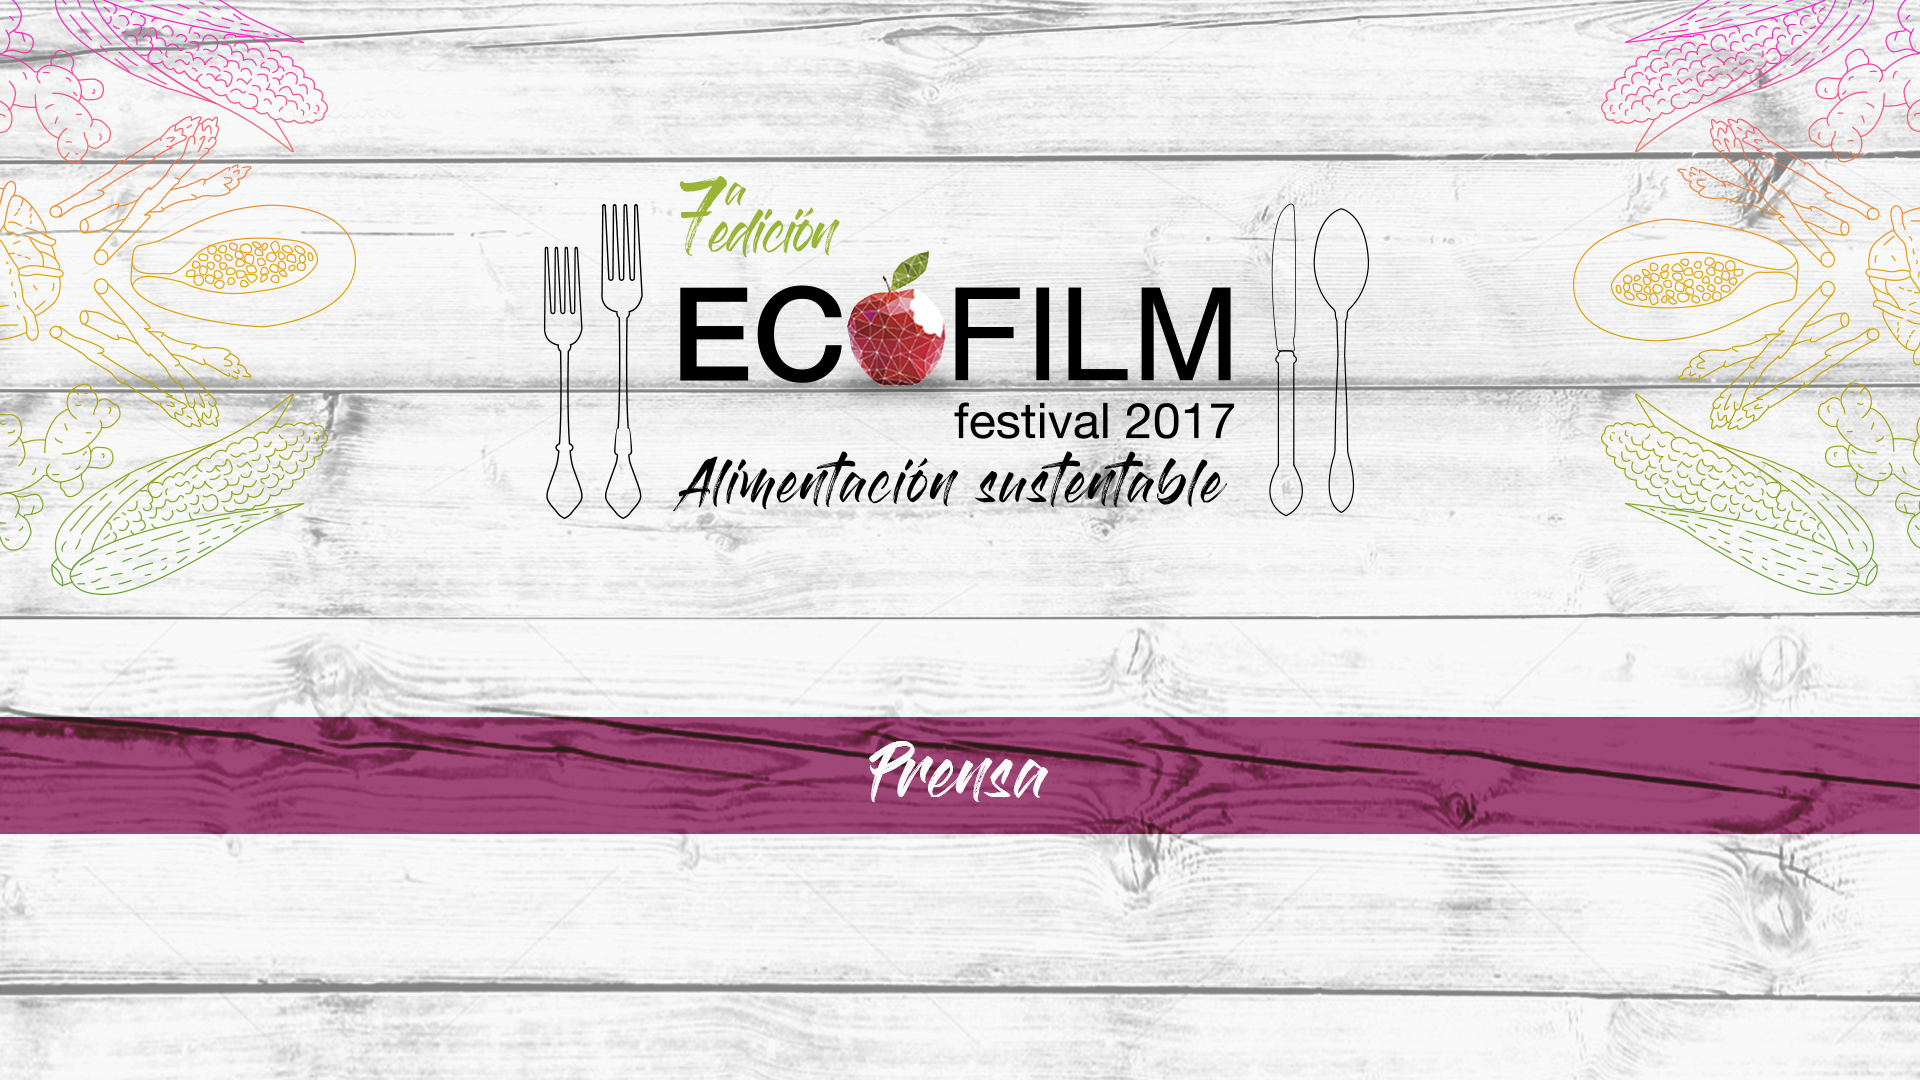 Ecofilm 2017, opinión